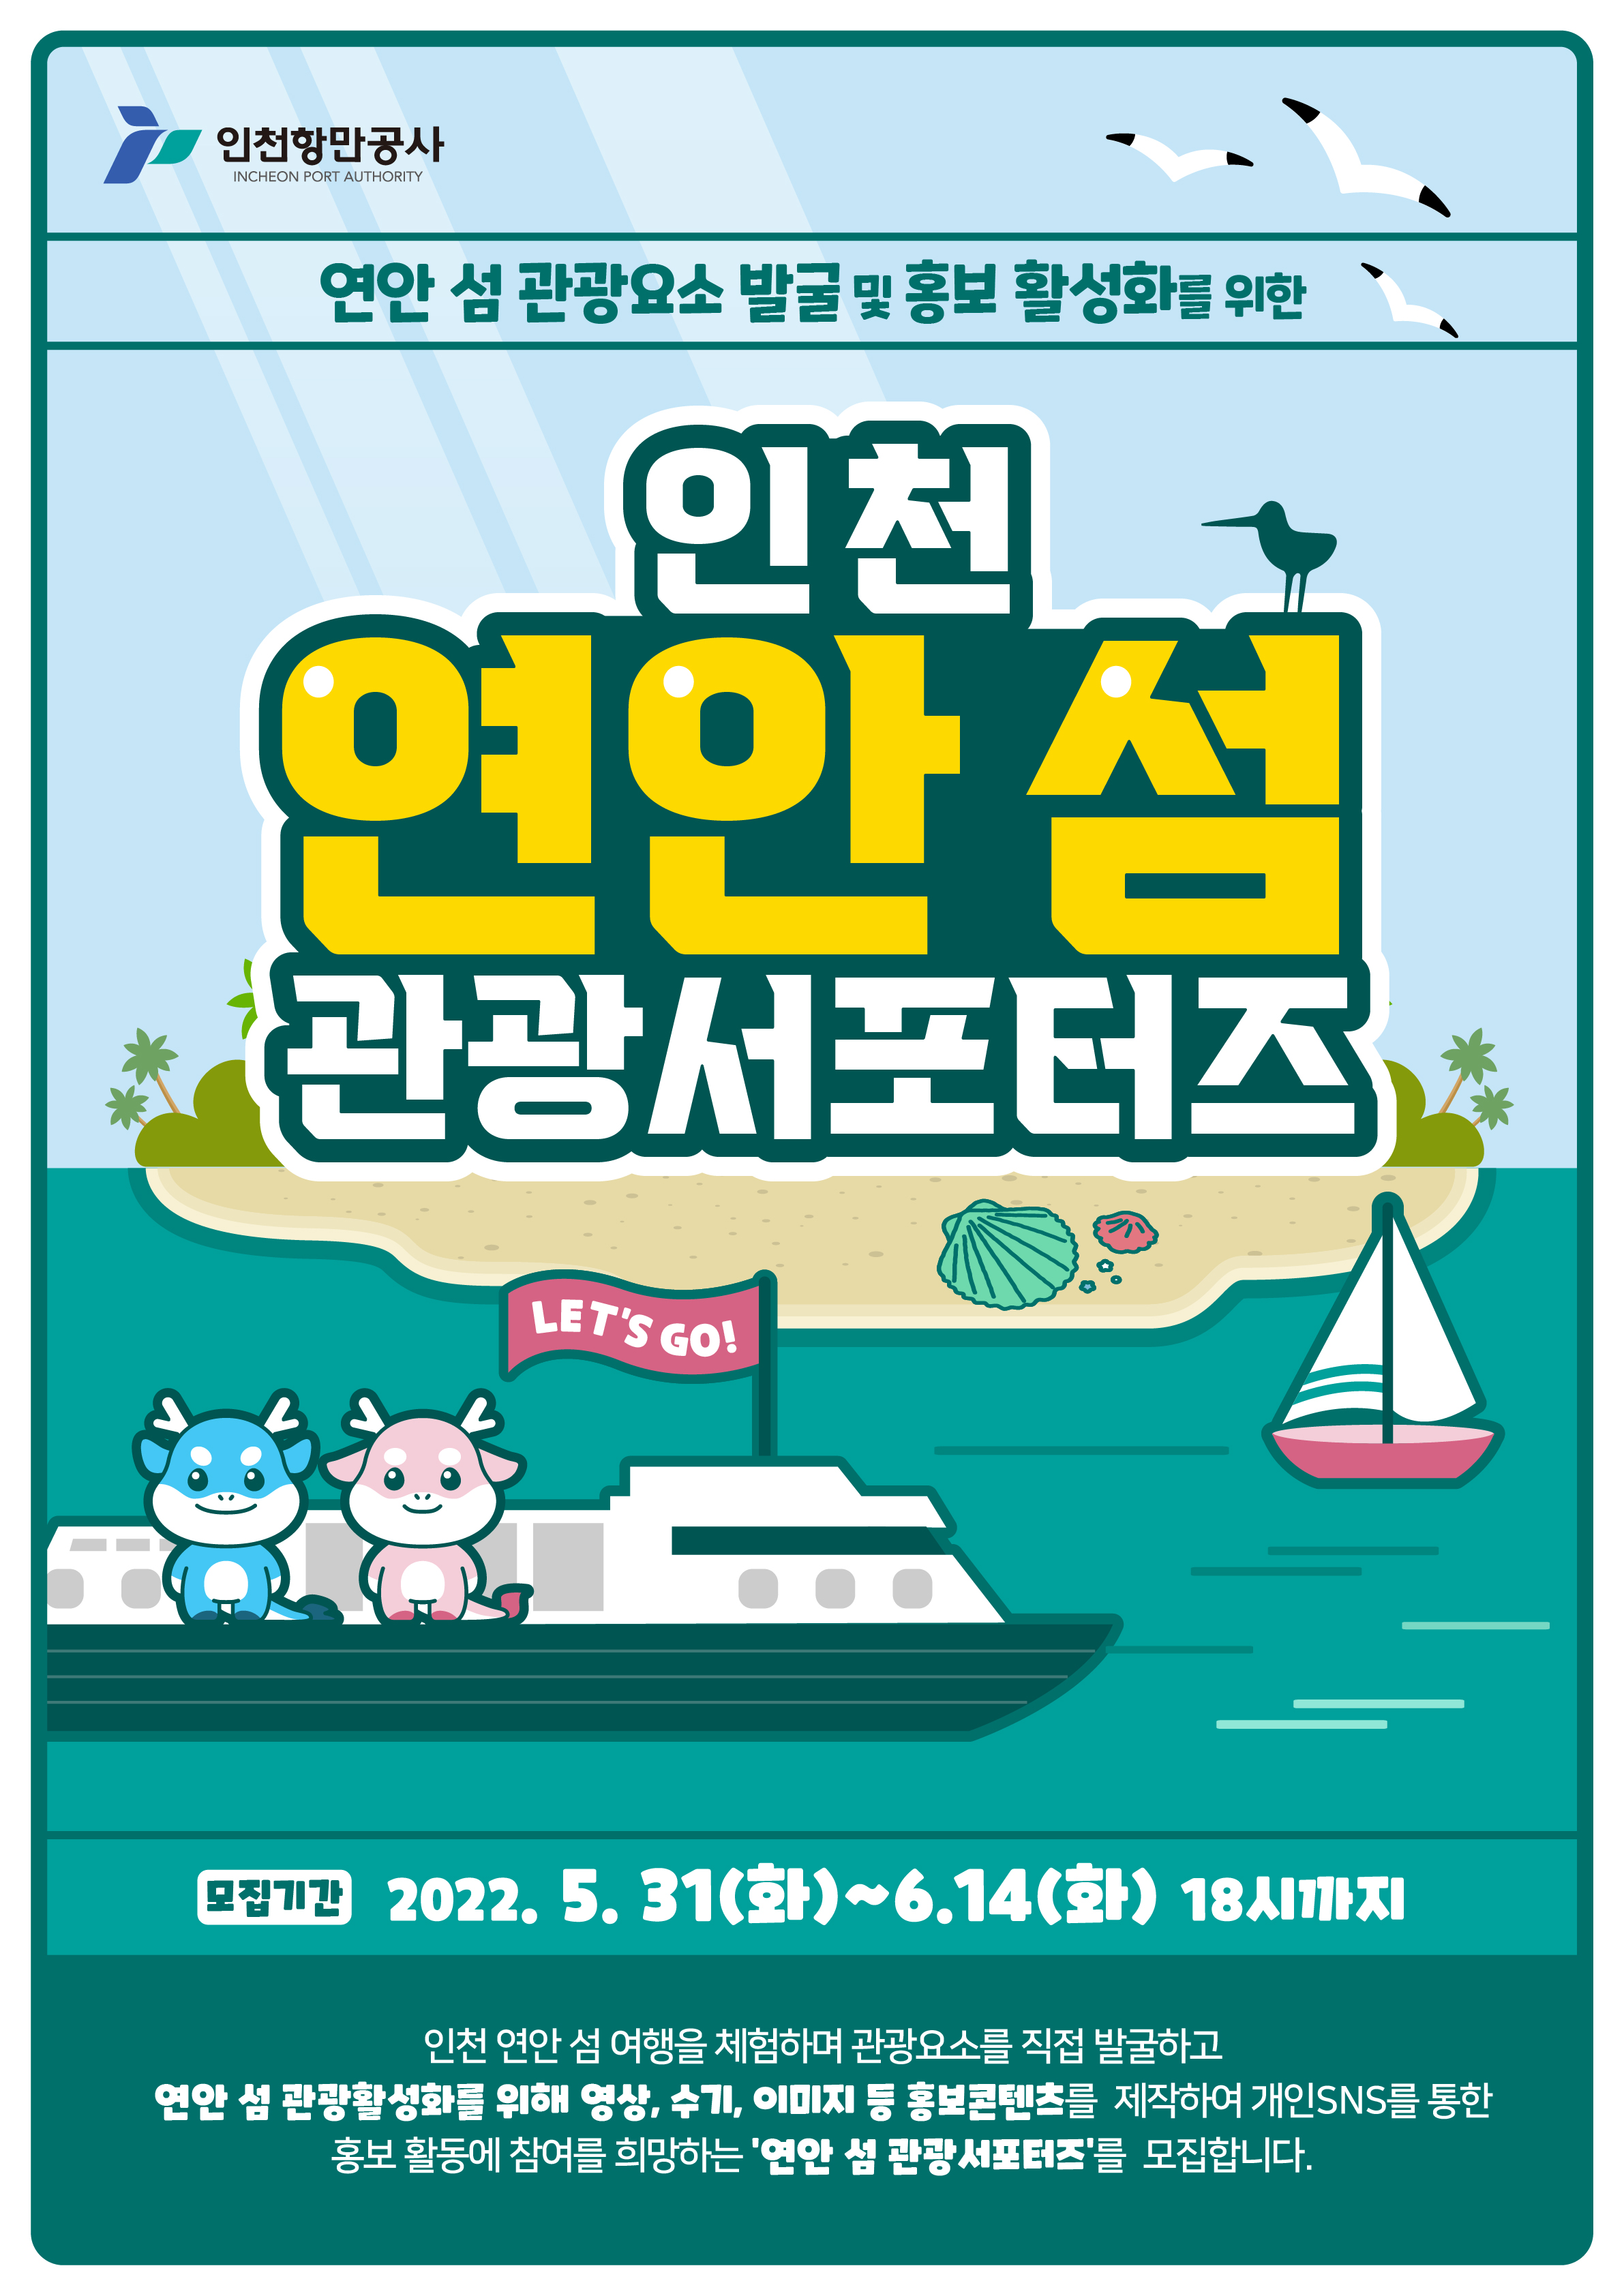 인천 연안 섬 관광 서포터즈 모집 포스터.자세한 내용은 아래 참조